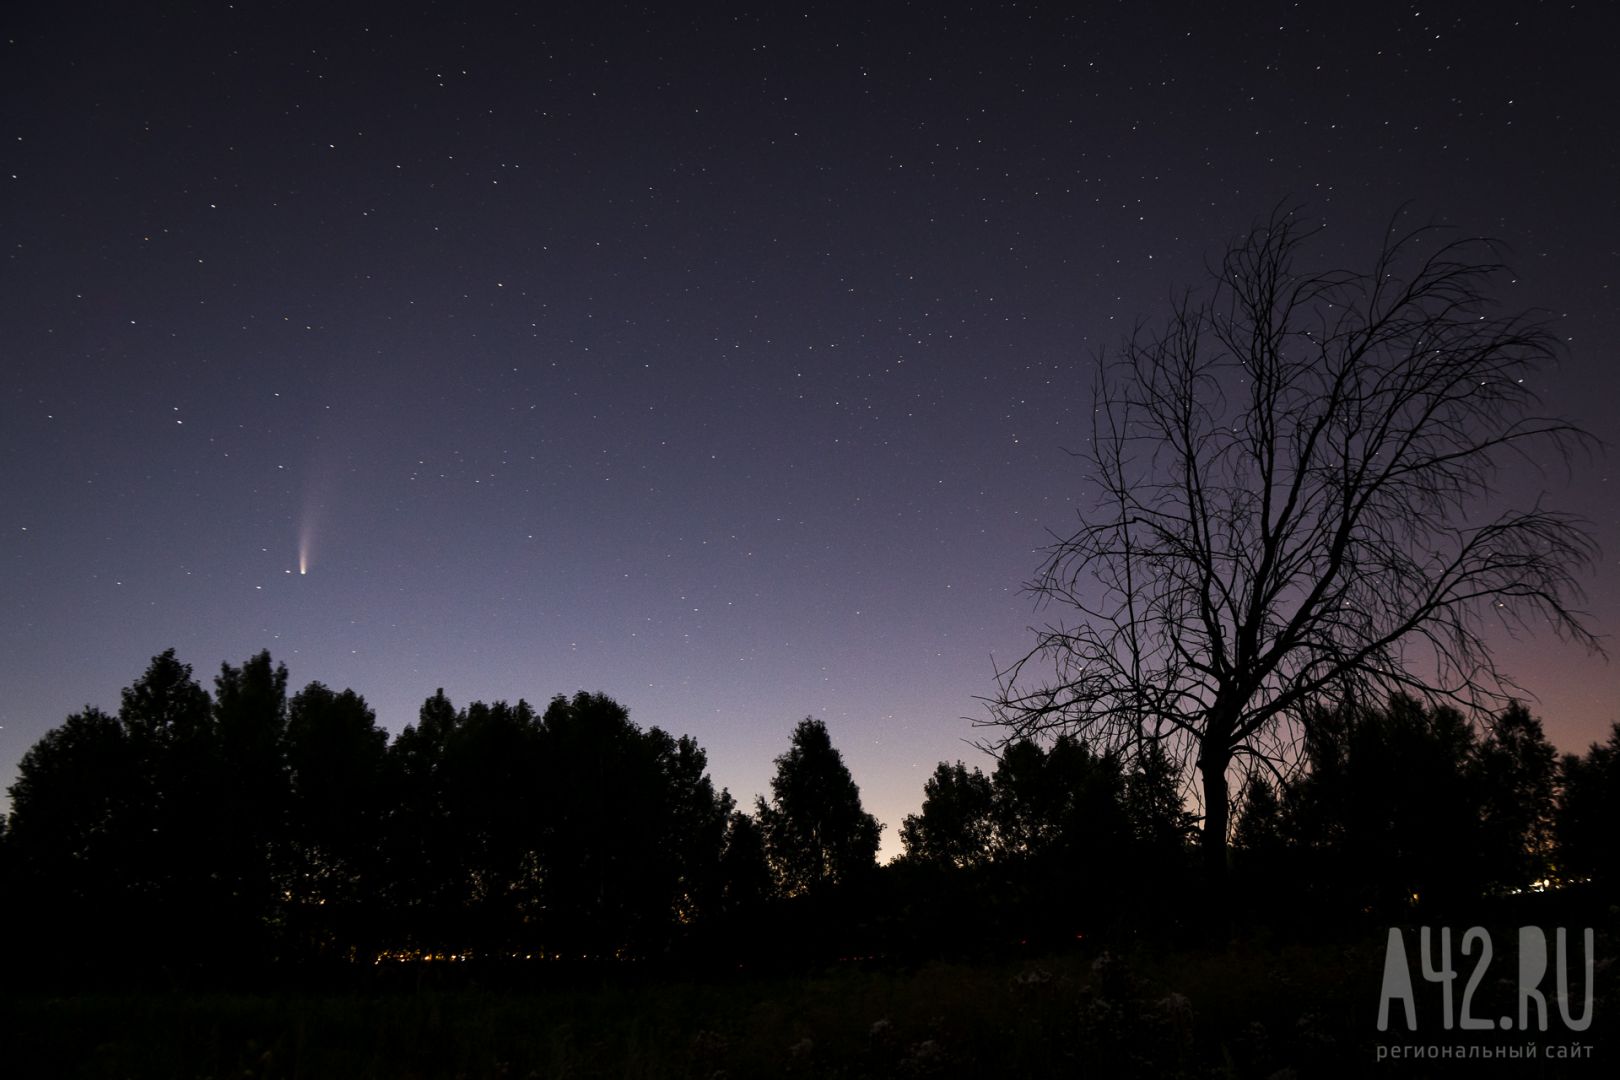  «Астероид, комета или НЛО»: кузбассовцы обсуждают полёт похожего на медузу светящегося объекта